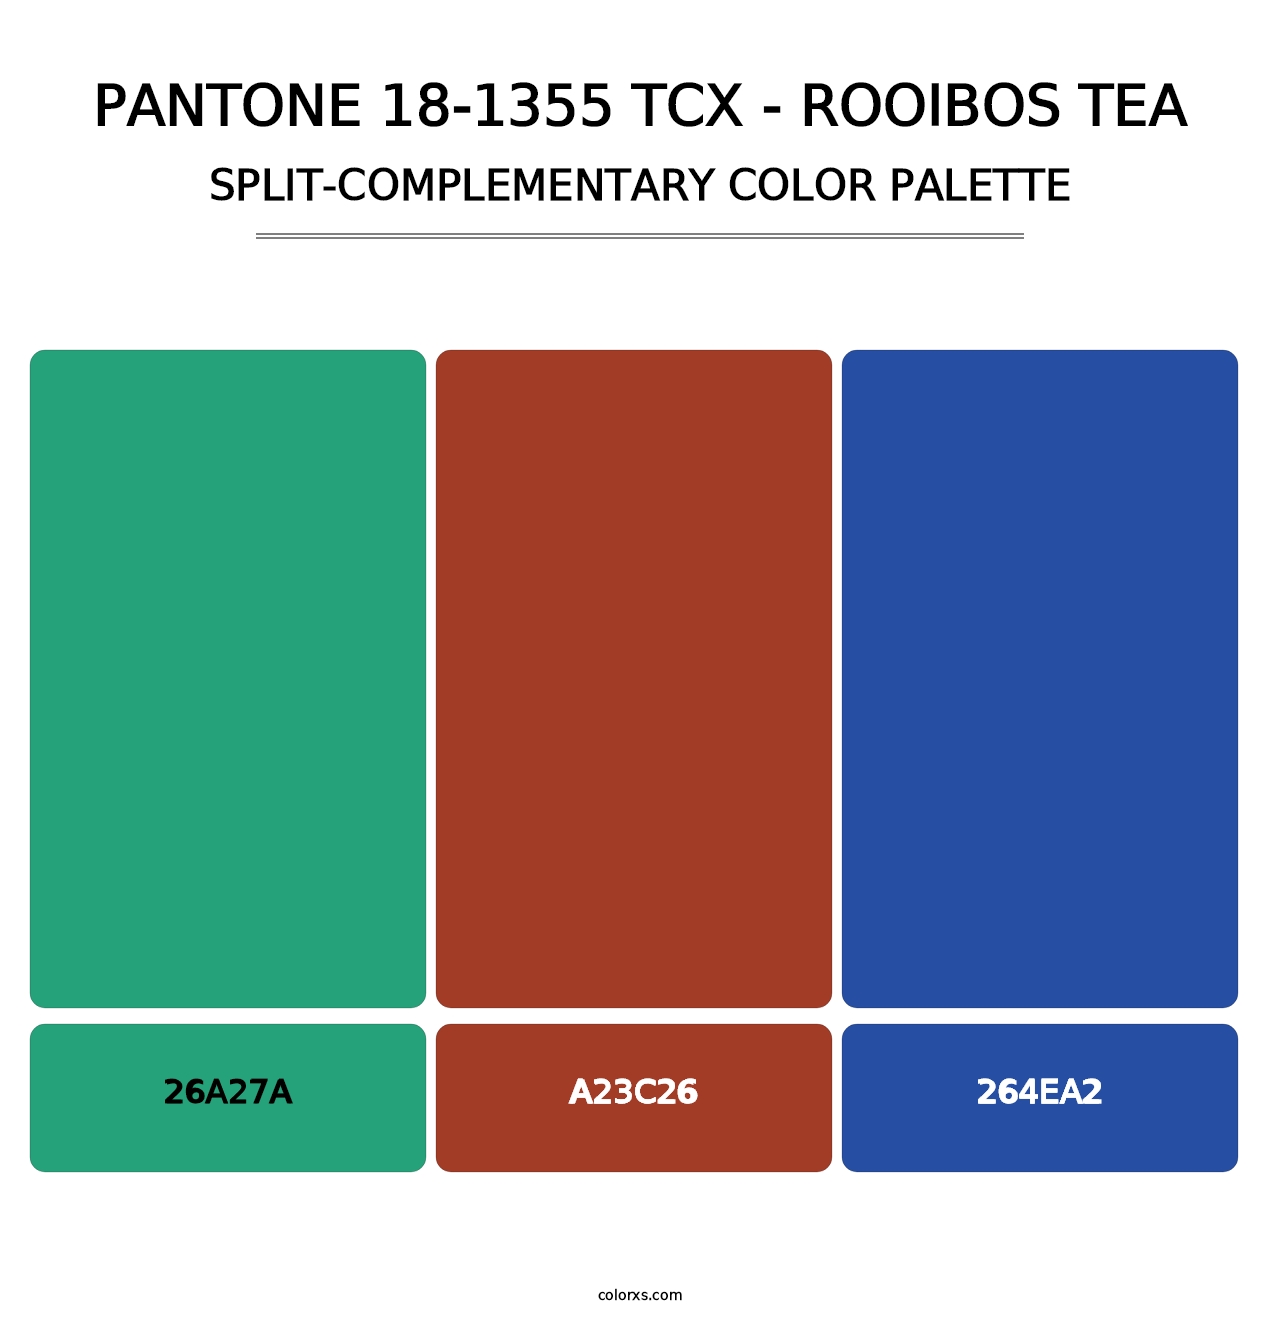 PANTONE 18-1355 TCX - Rooibos Tea - Split-Complementary Color Palette